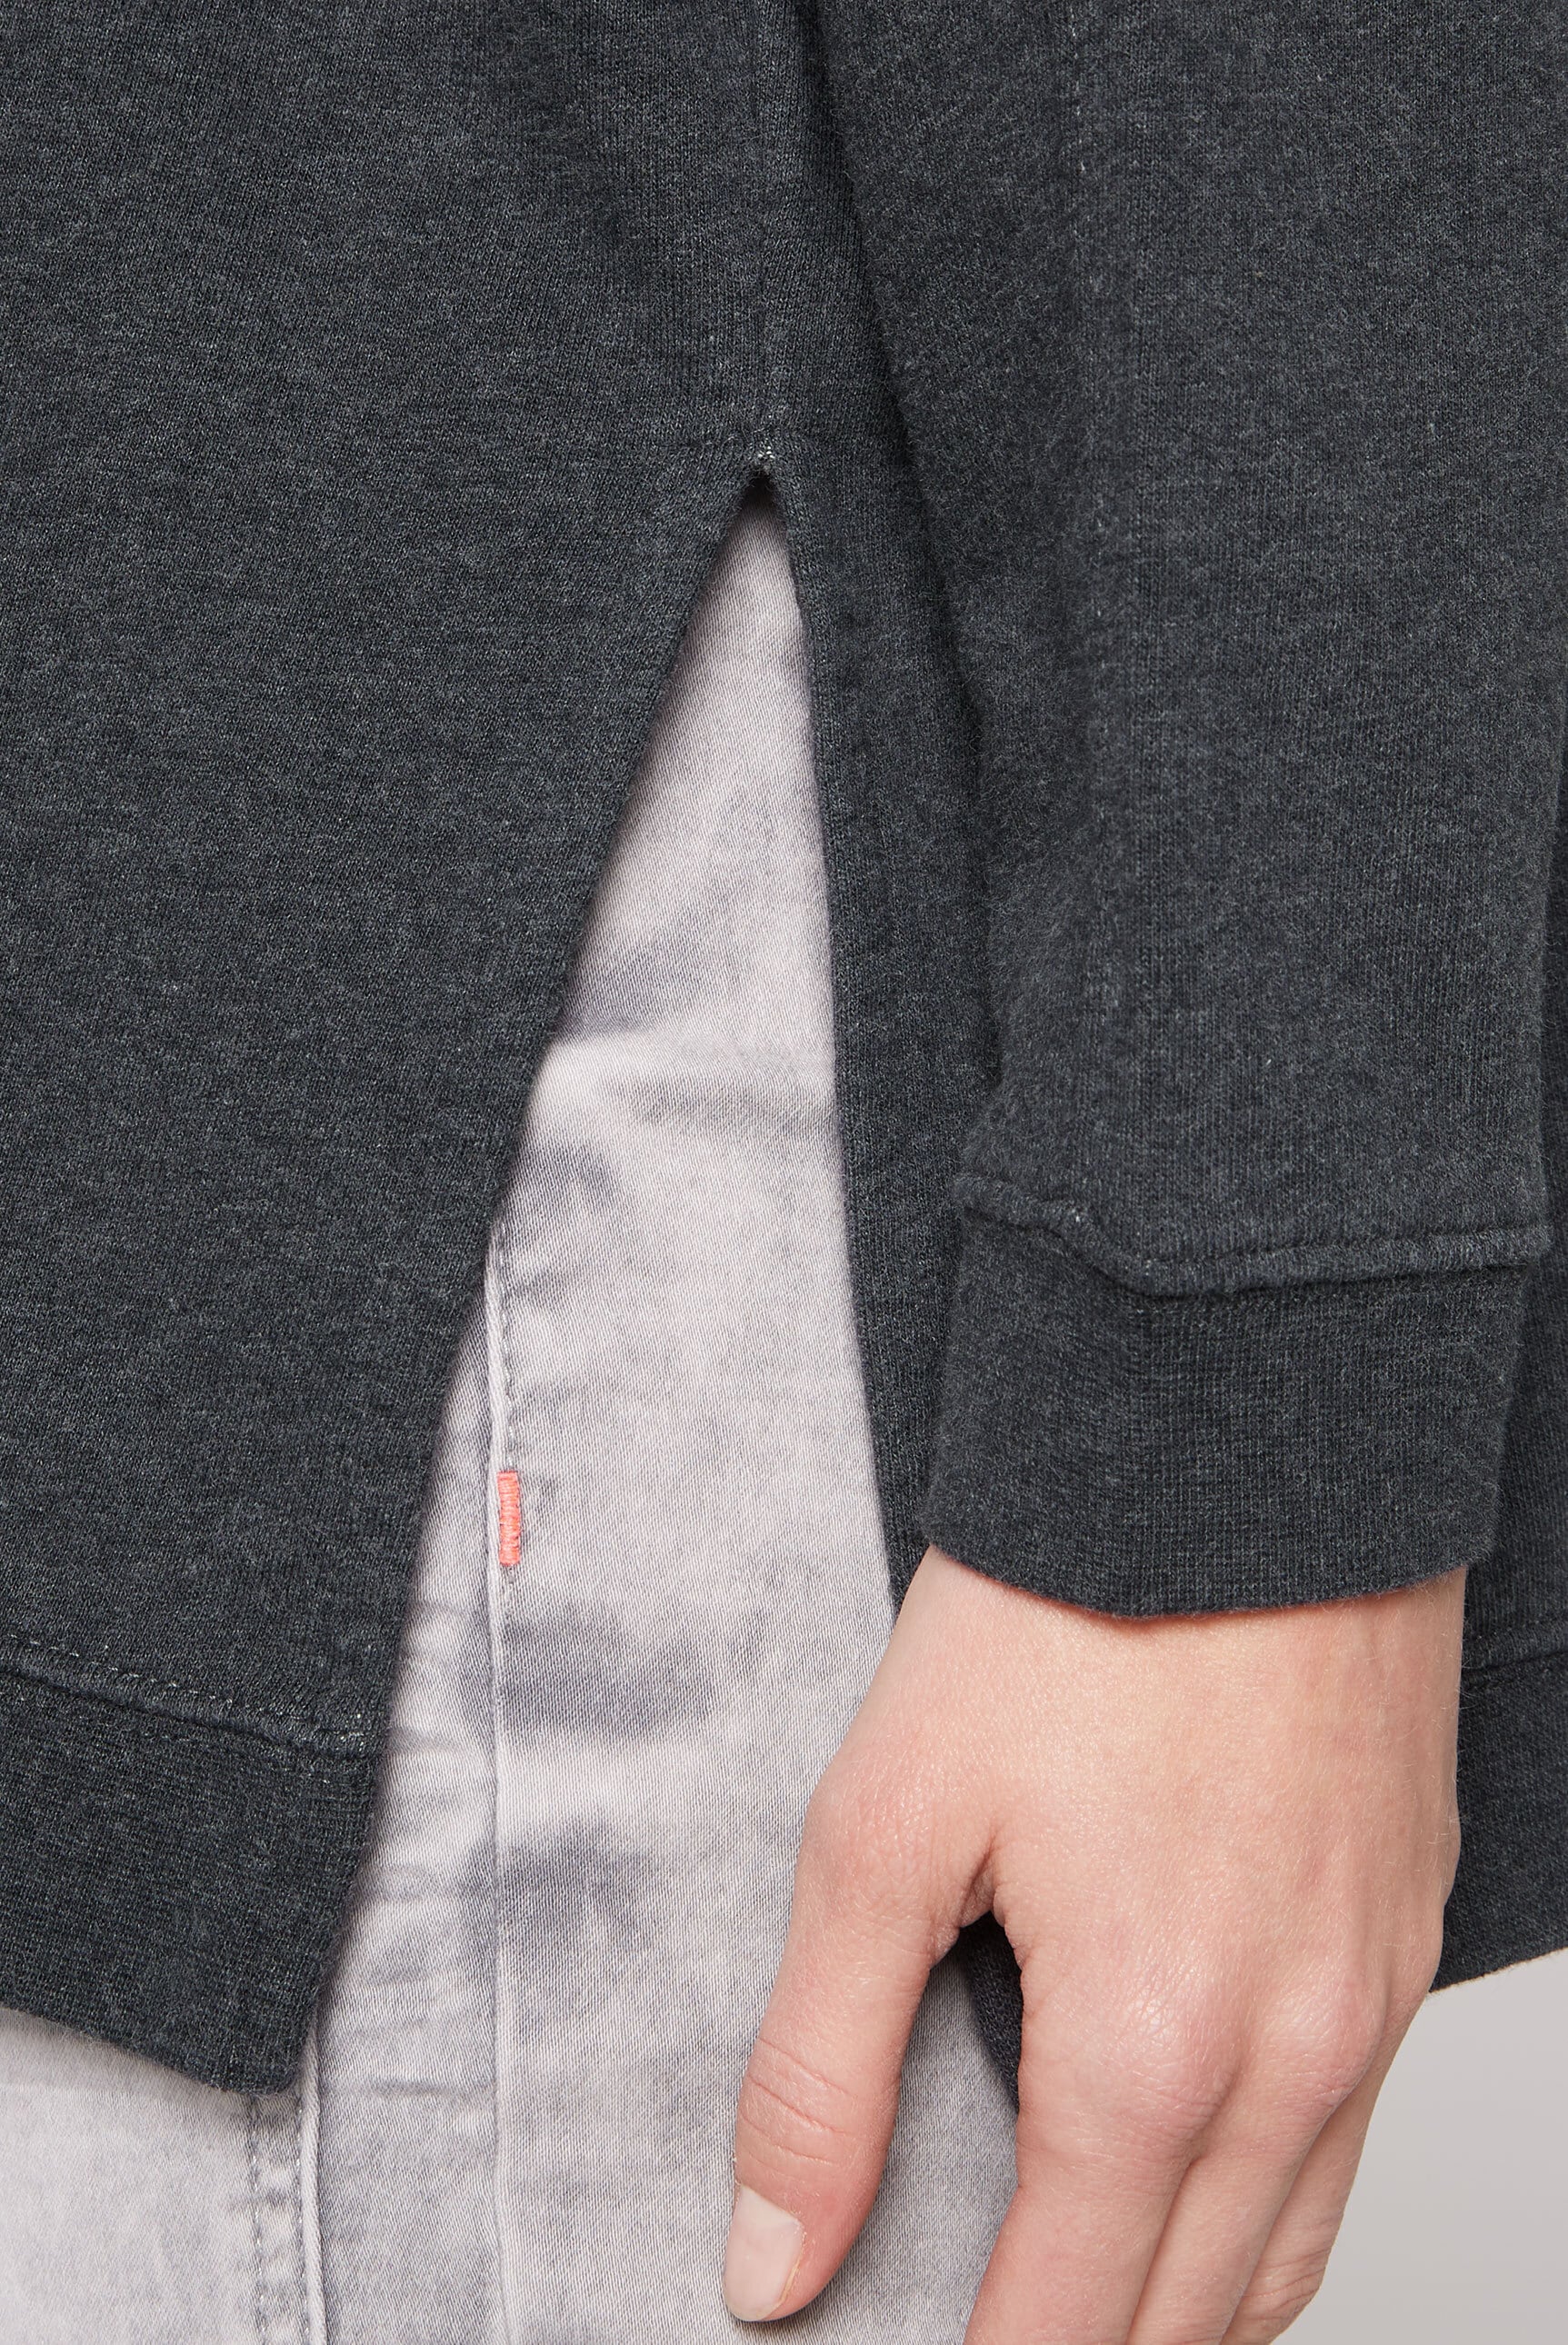 SOCCX Sweater, mit überschnittenen Schultern